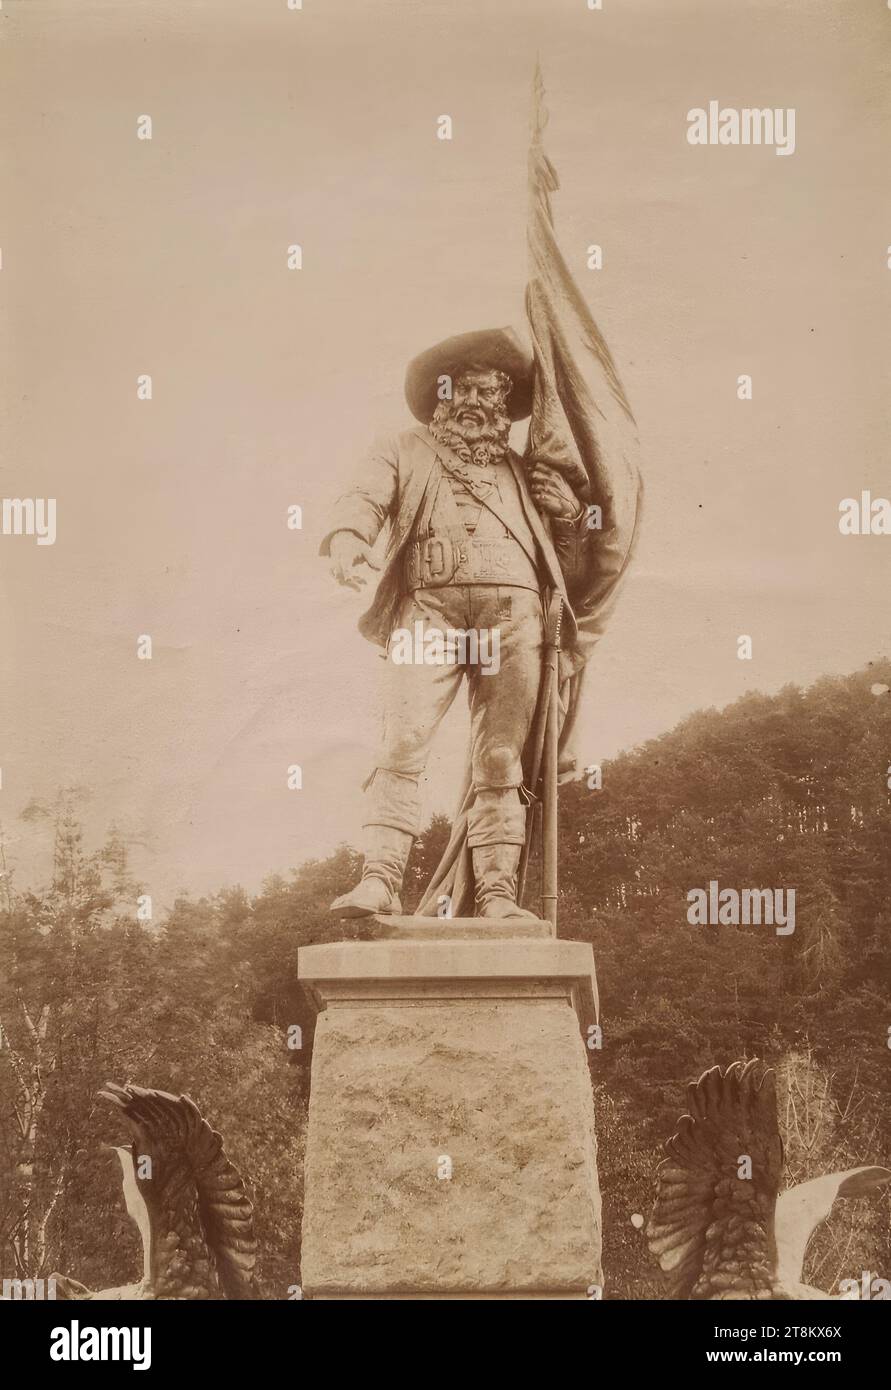 Il monumento di Andreas Hofer a Bergisel a Innsbruck, intorno al 1900, fotografia su carta di albume, foglio: 14,9 x 10,4 cm Foto Stock